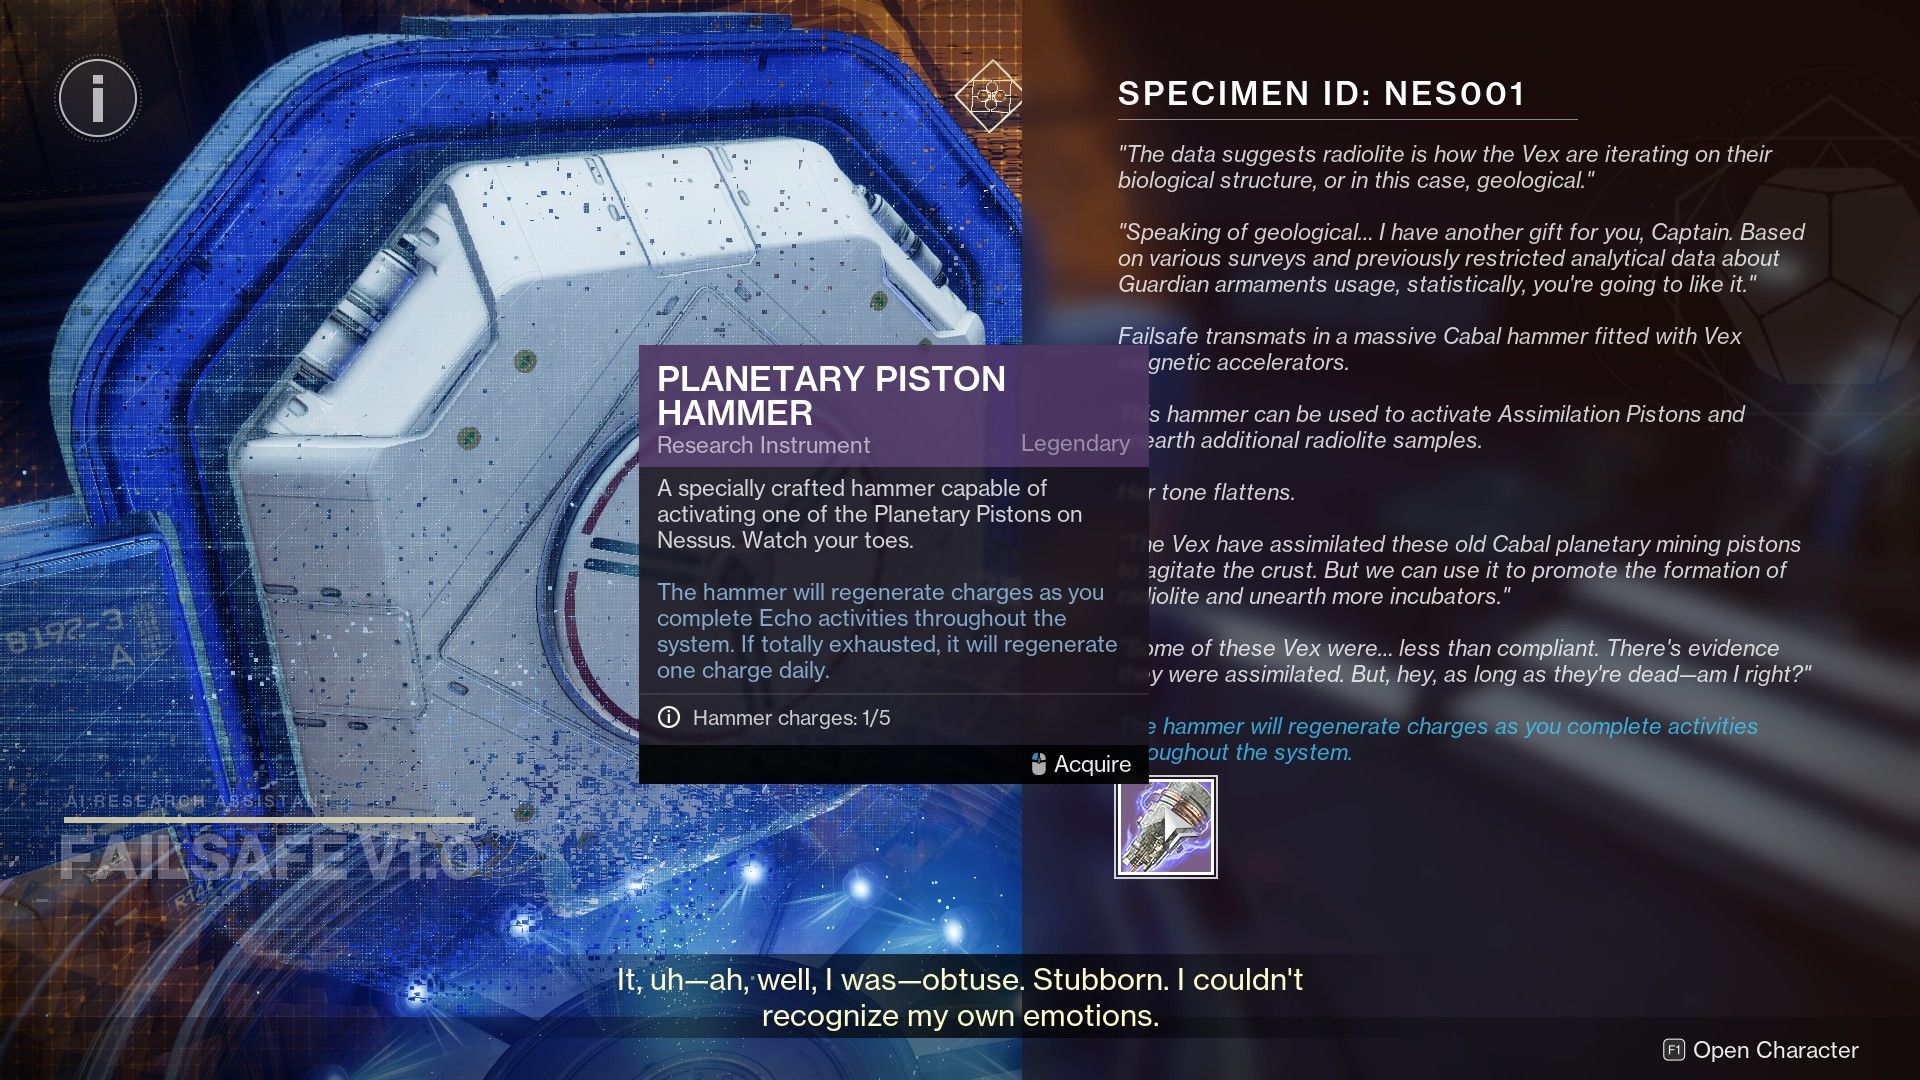 The Planetary Piston Hammer's description in Destiny 2